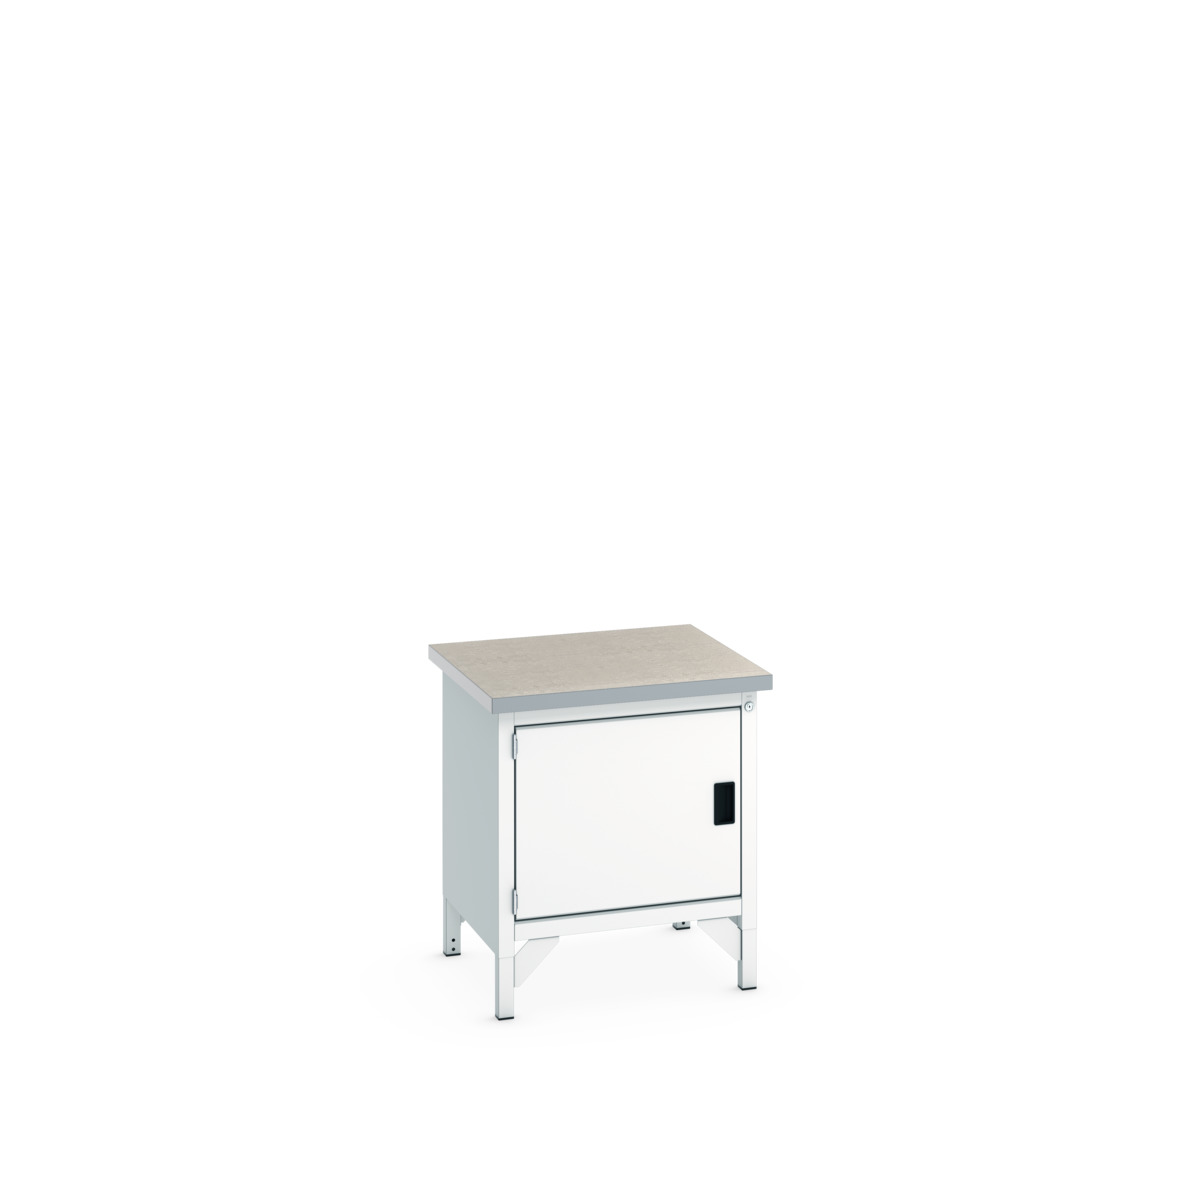 41002006.16V - cubio storage bench (lino)